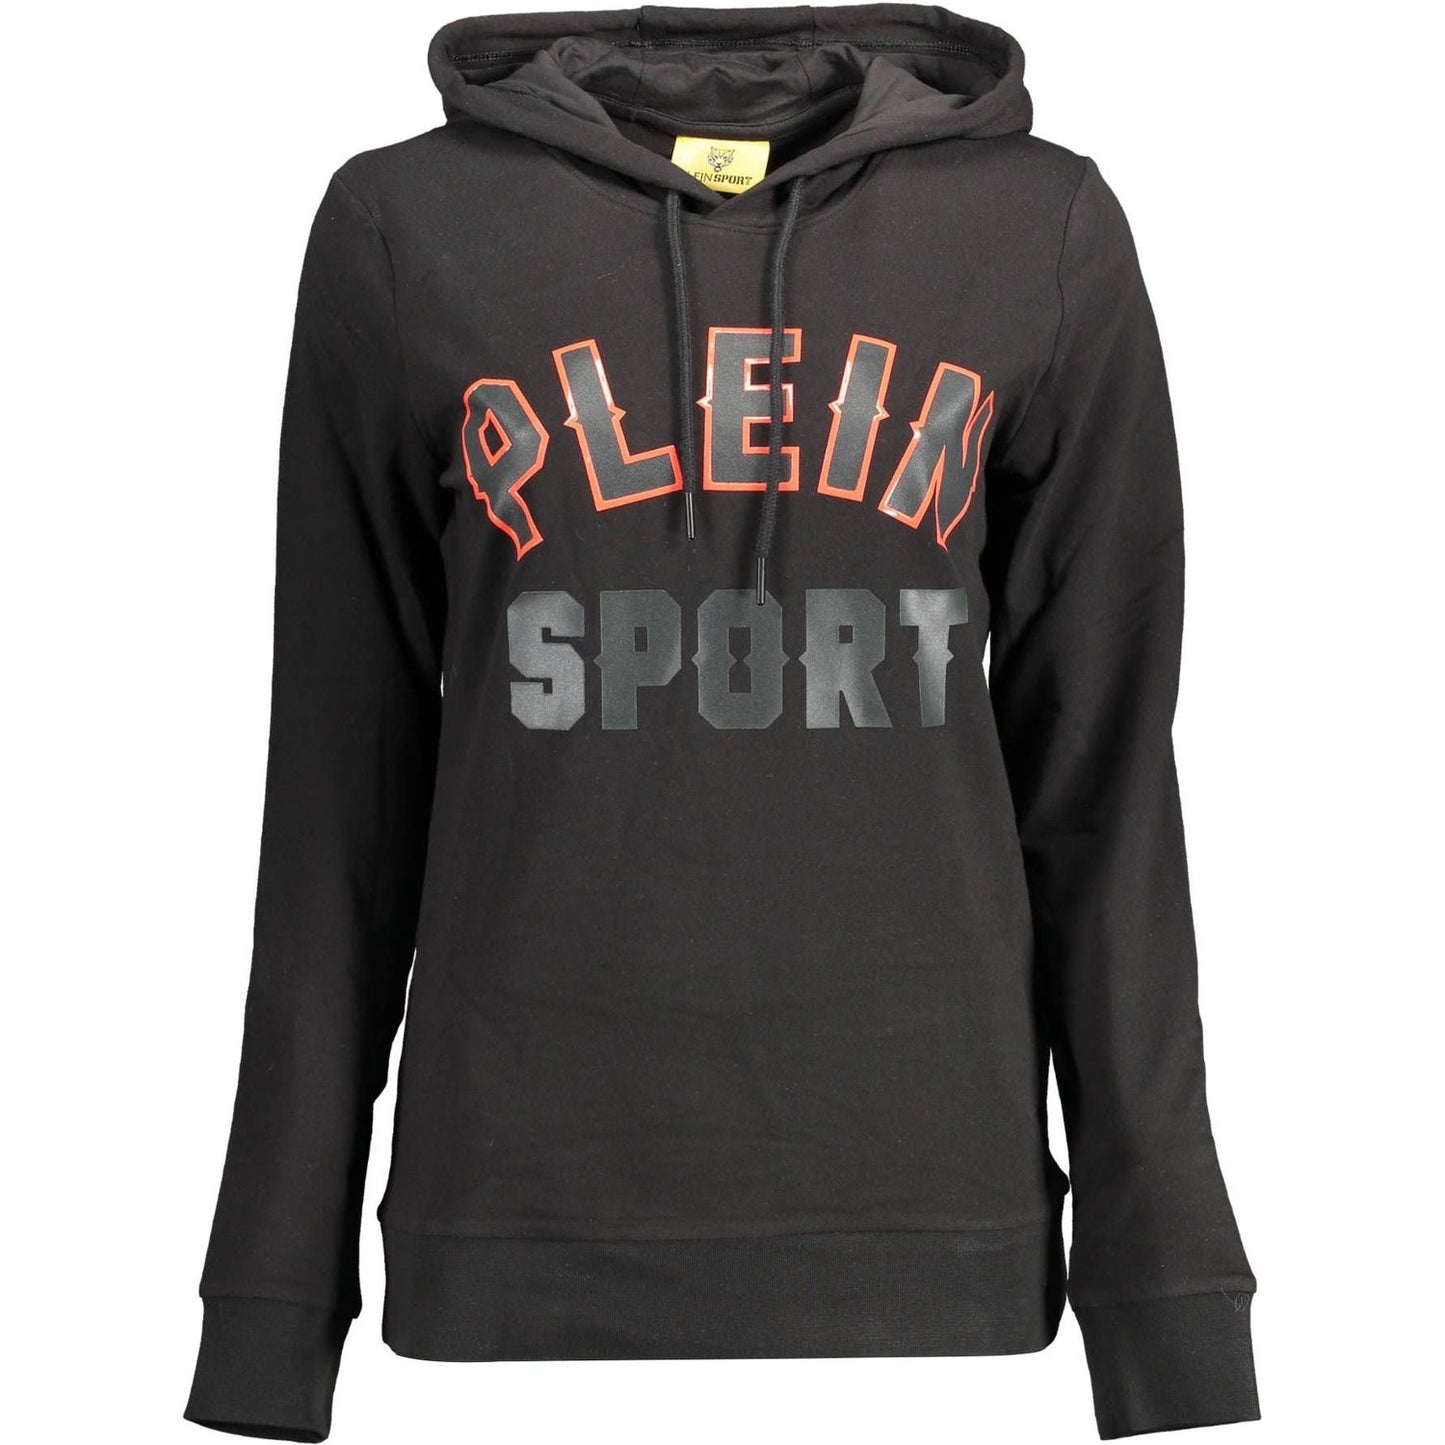 Plein SportSleek Black Hooded Sweatshirt with Bold AccentsMcRichard Designer Brands£109.00